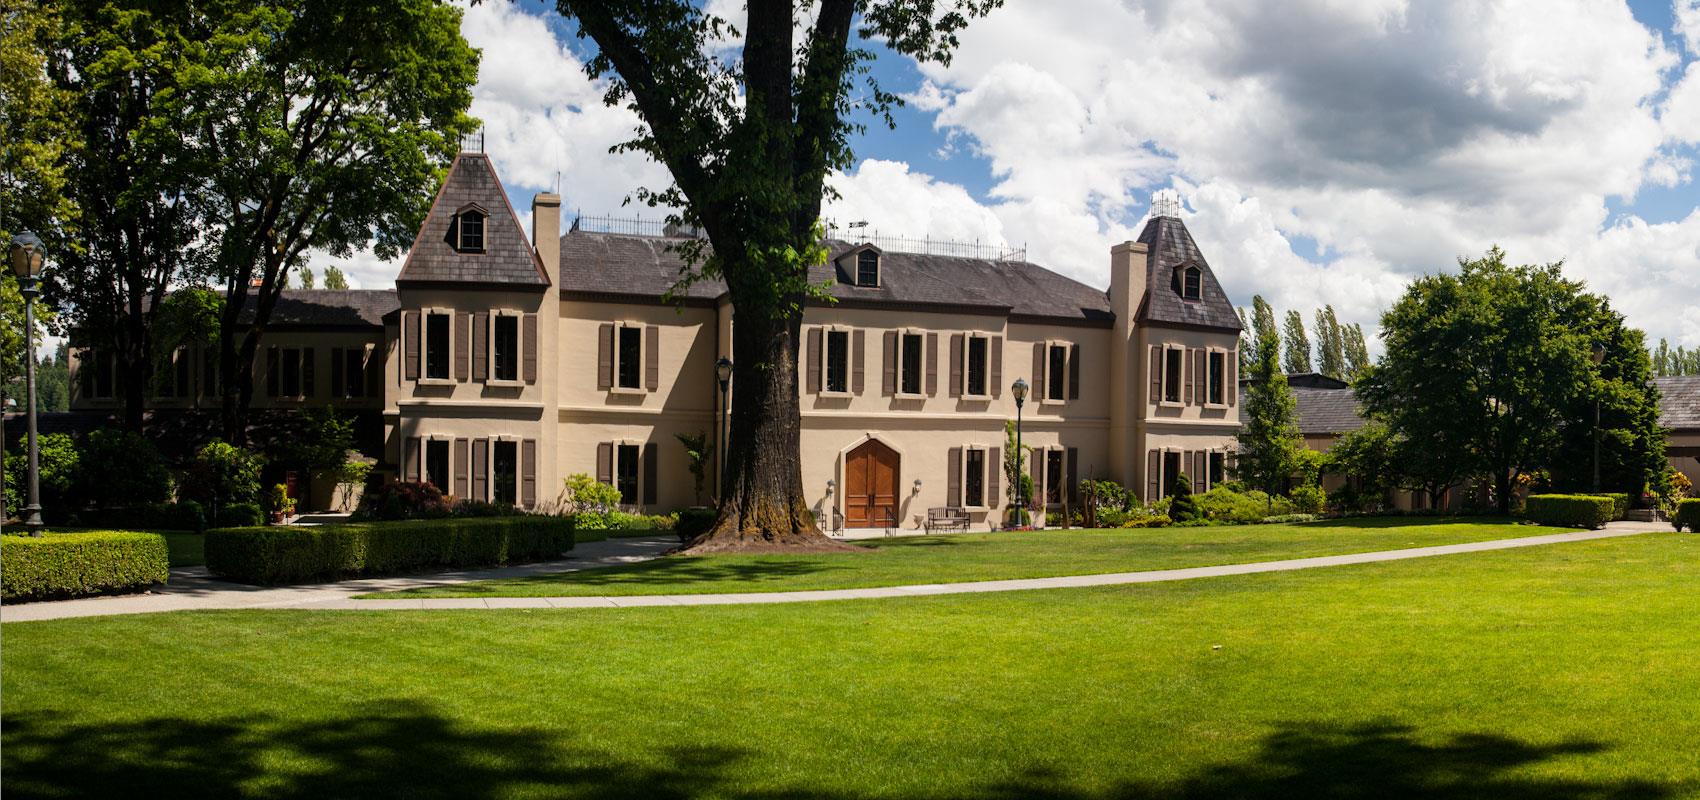 Chateau Ste. Michelle Winery Woodinville, Washington